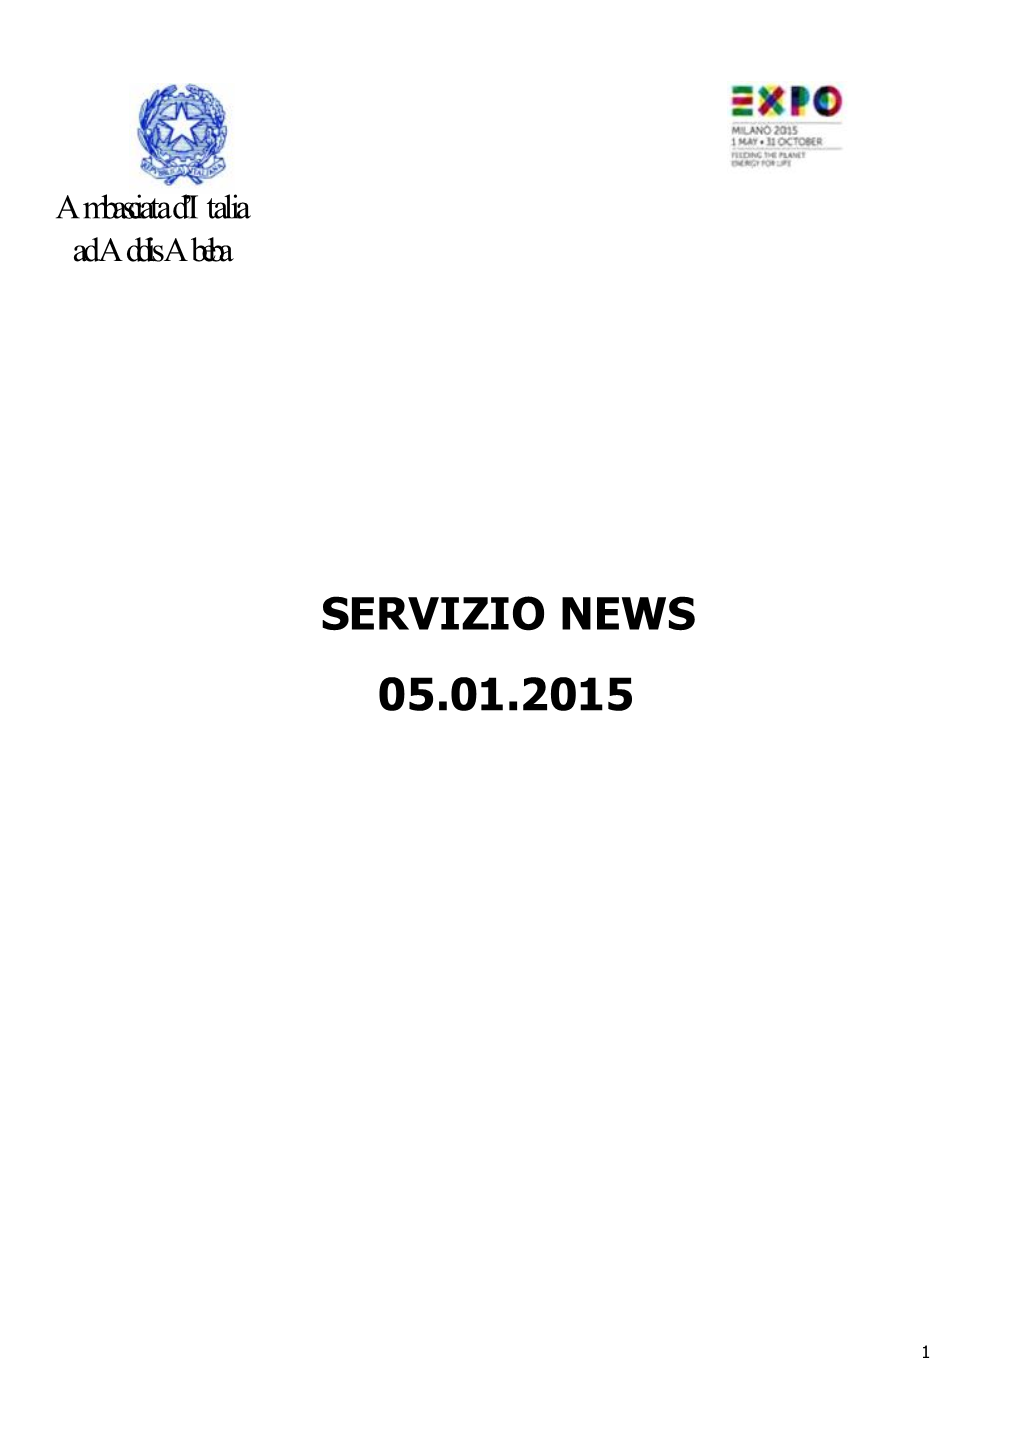 Servizio News 05.01.2015